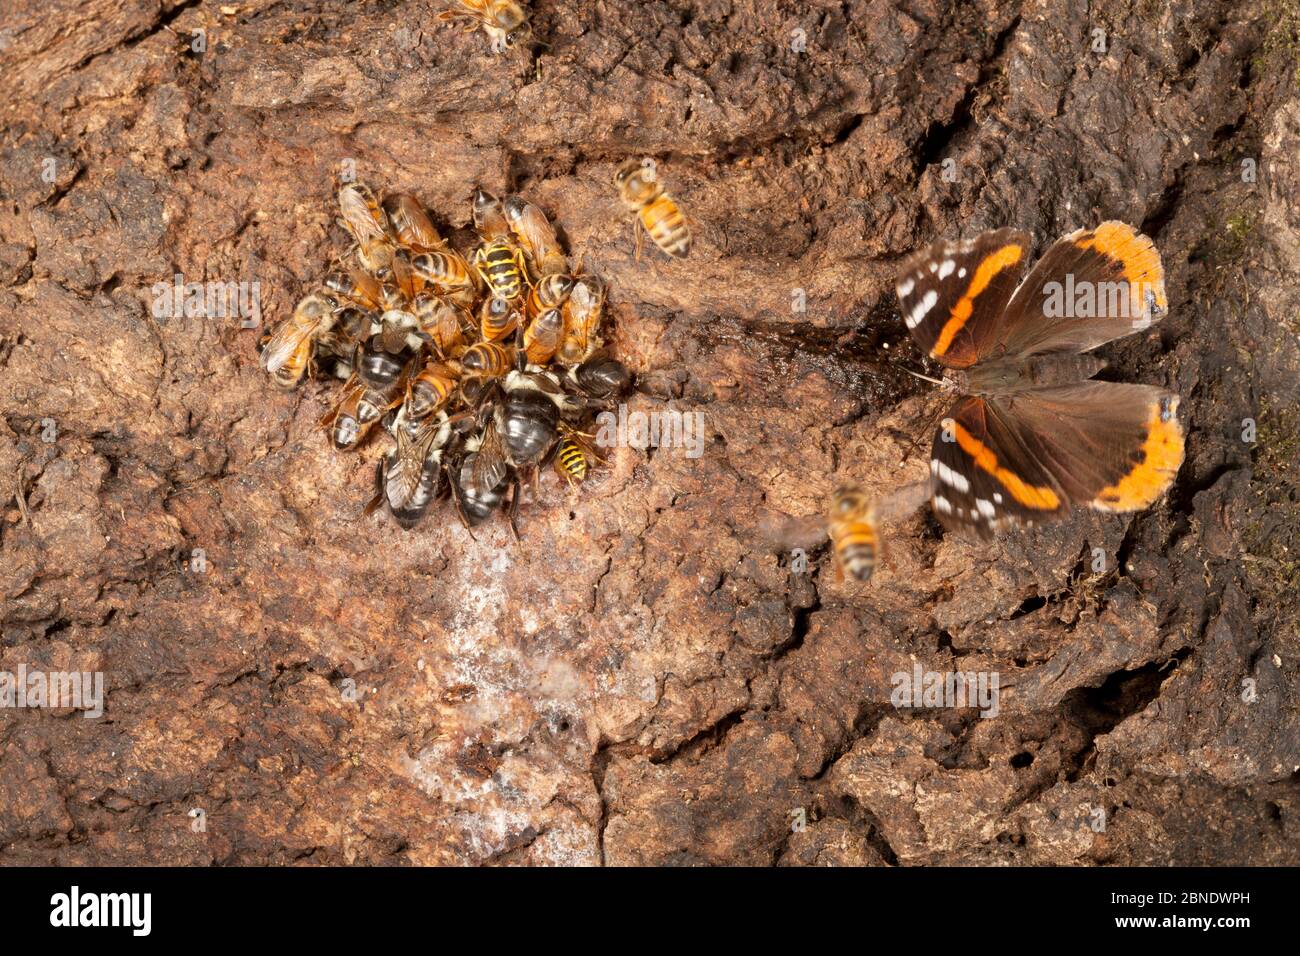 1526327 - - Honigbienen (APIs melifera) Hummeln (Bombus) und flauschige gelbe Jacke (Vespula flavopilosa) und roter Admiralschmetterling (Vanessa atalanta) Stockfoto